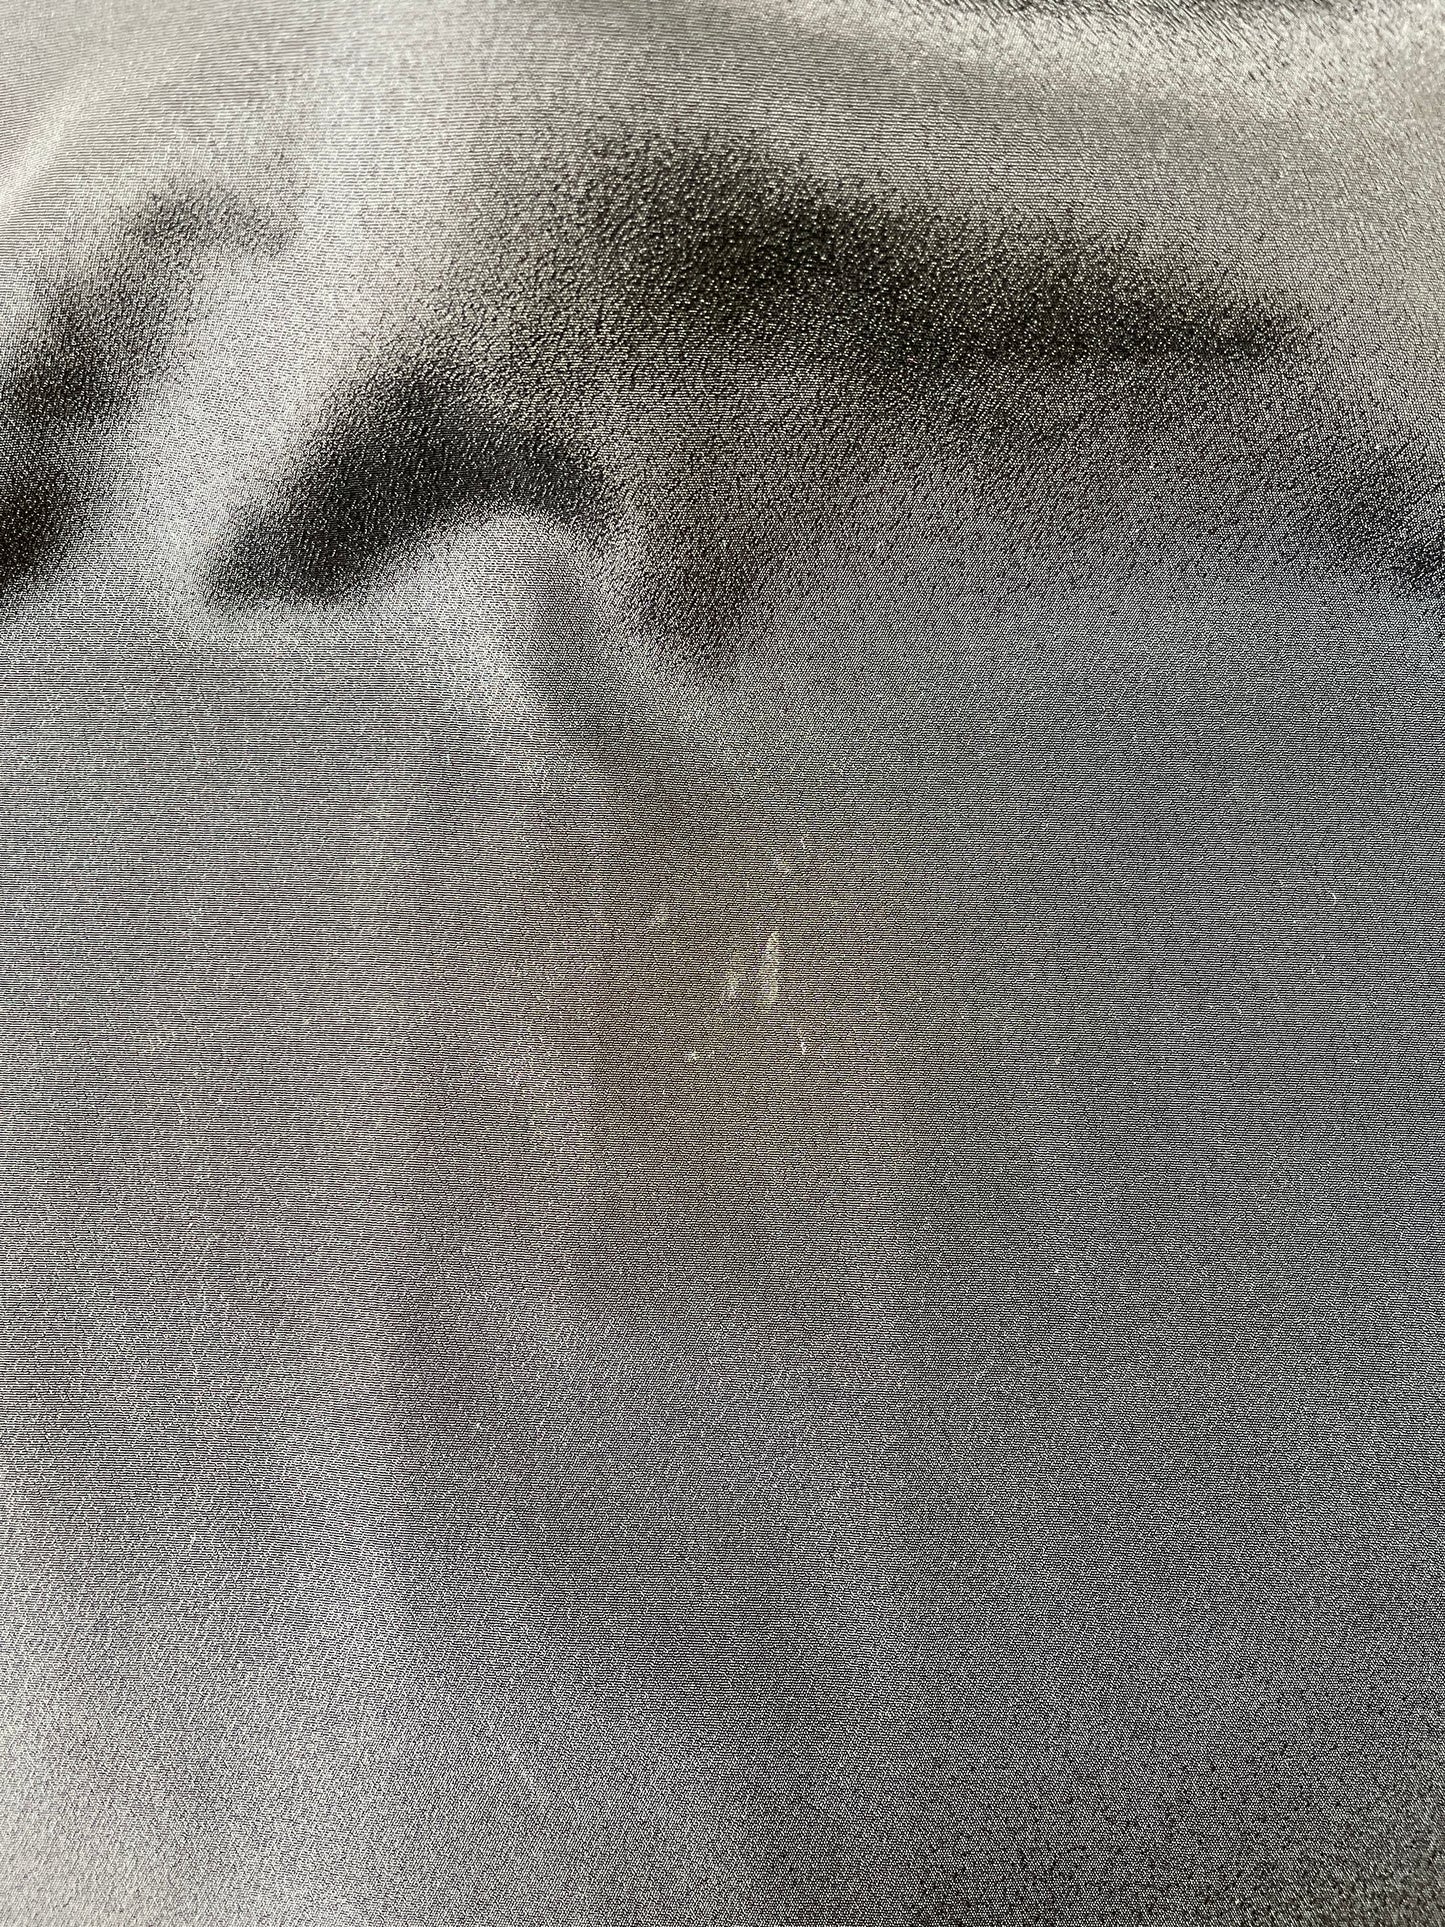 Robe noire à carreaux bleu, chocolat et blanc (XS)